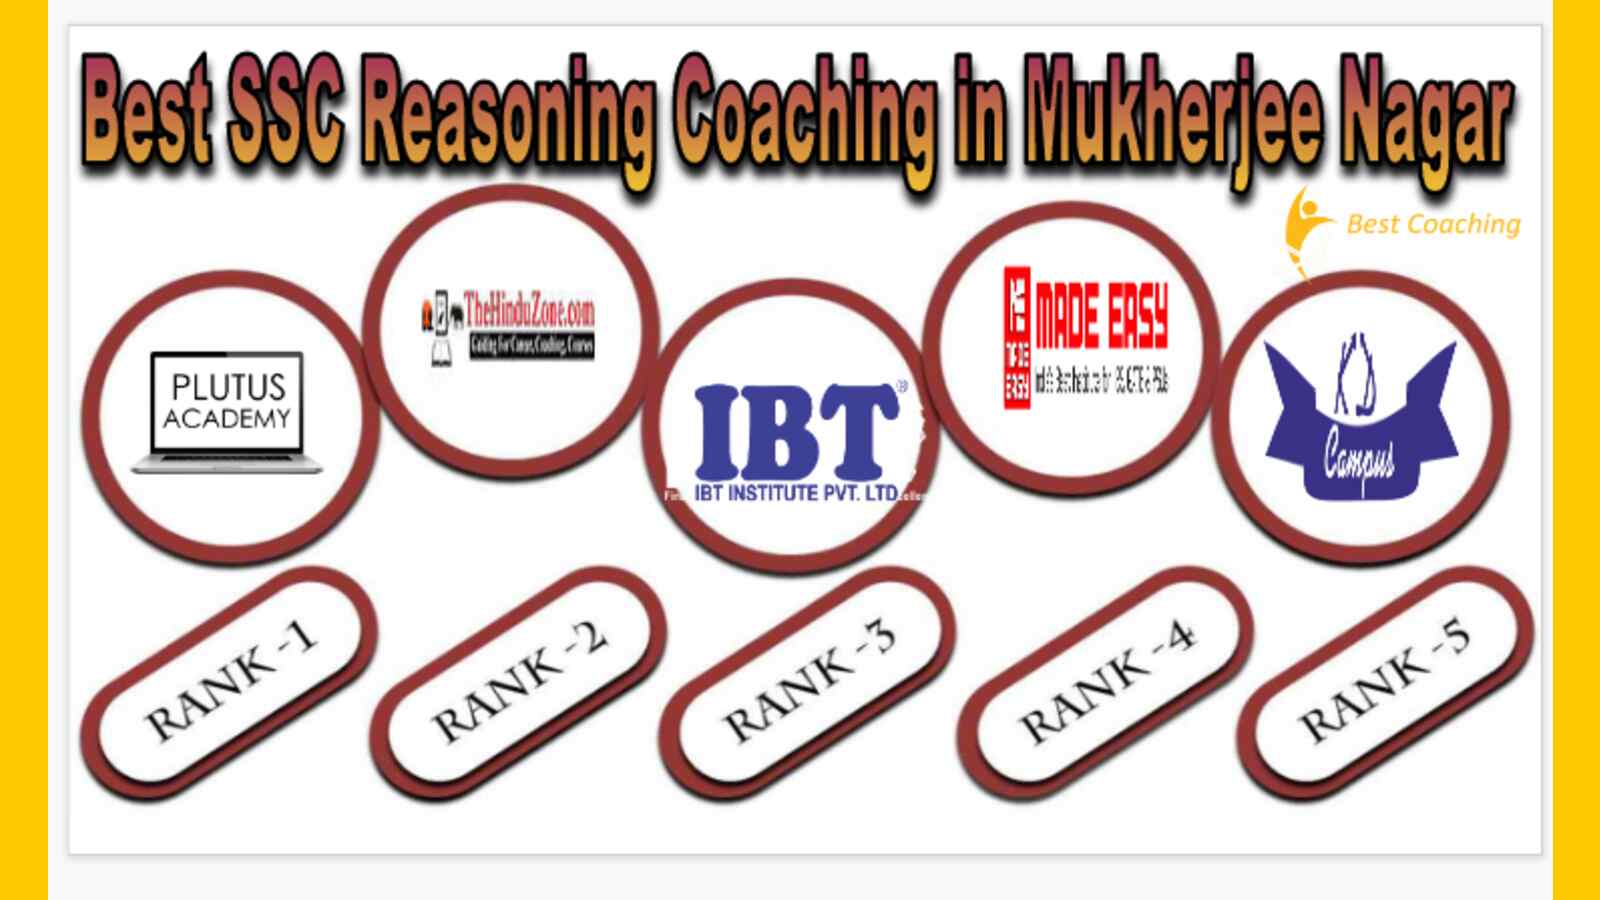 Best SSC reasoning Coaching in Mukherjee Nagar